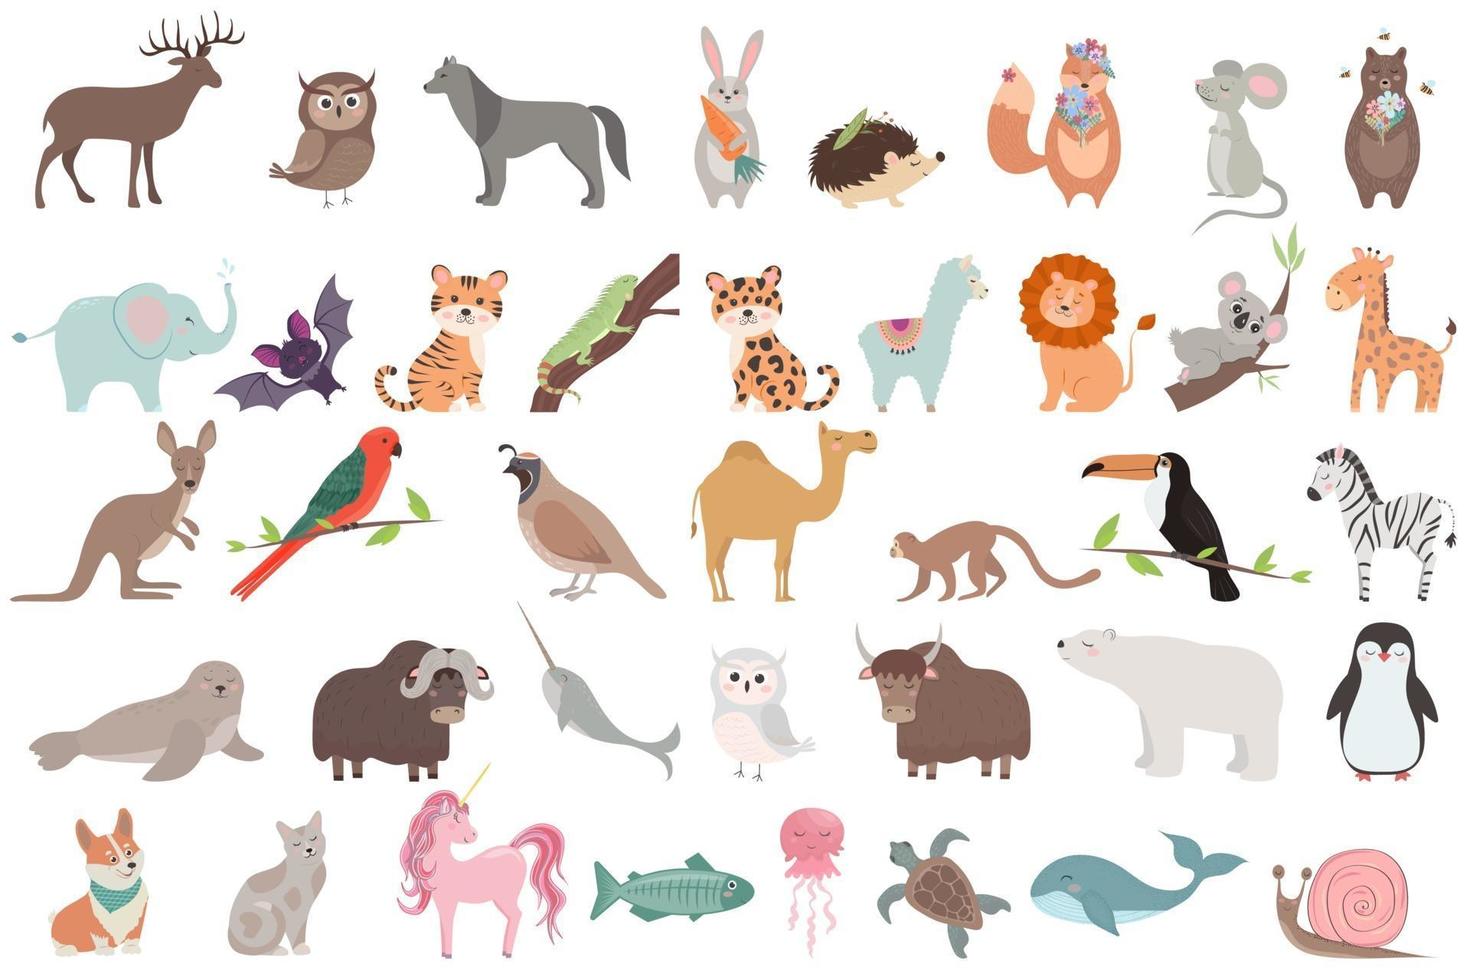 grote set met schattige dieren in cartoonstijl vector